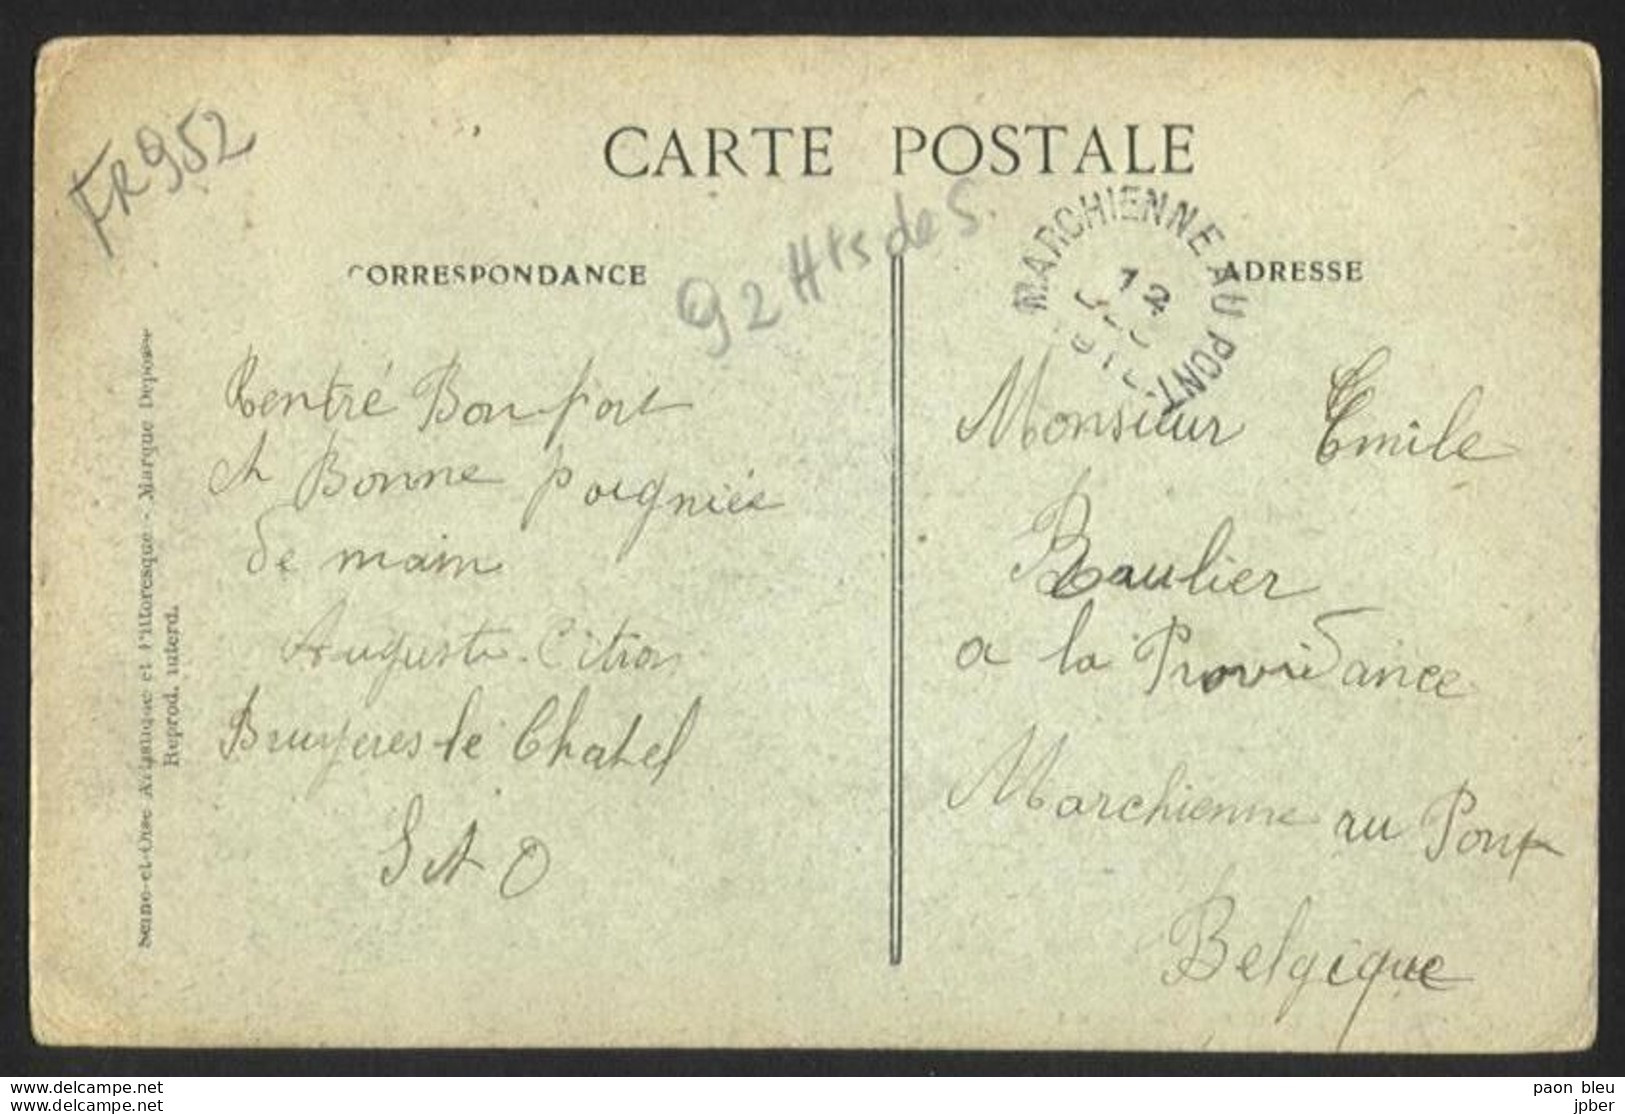 Belgique - Obl.fortune 1919 - 2 Scan - Cachet Type électoral MARCHIENNE-AU-PONT + Verso Bruyères Le-Chatel (France) - Fortune (1919)